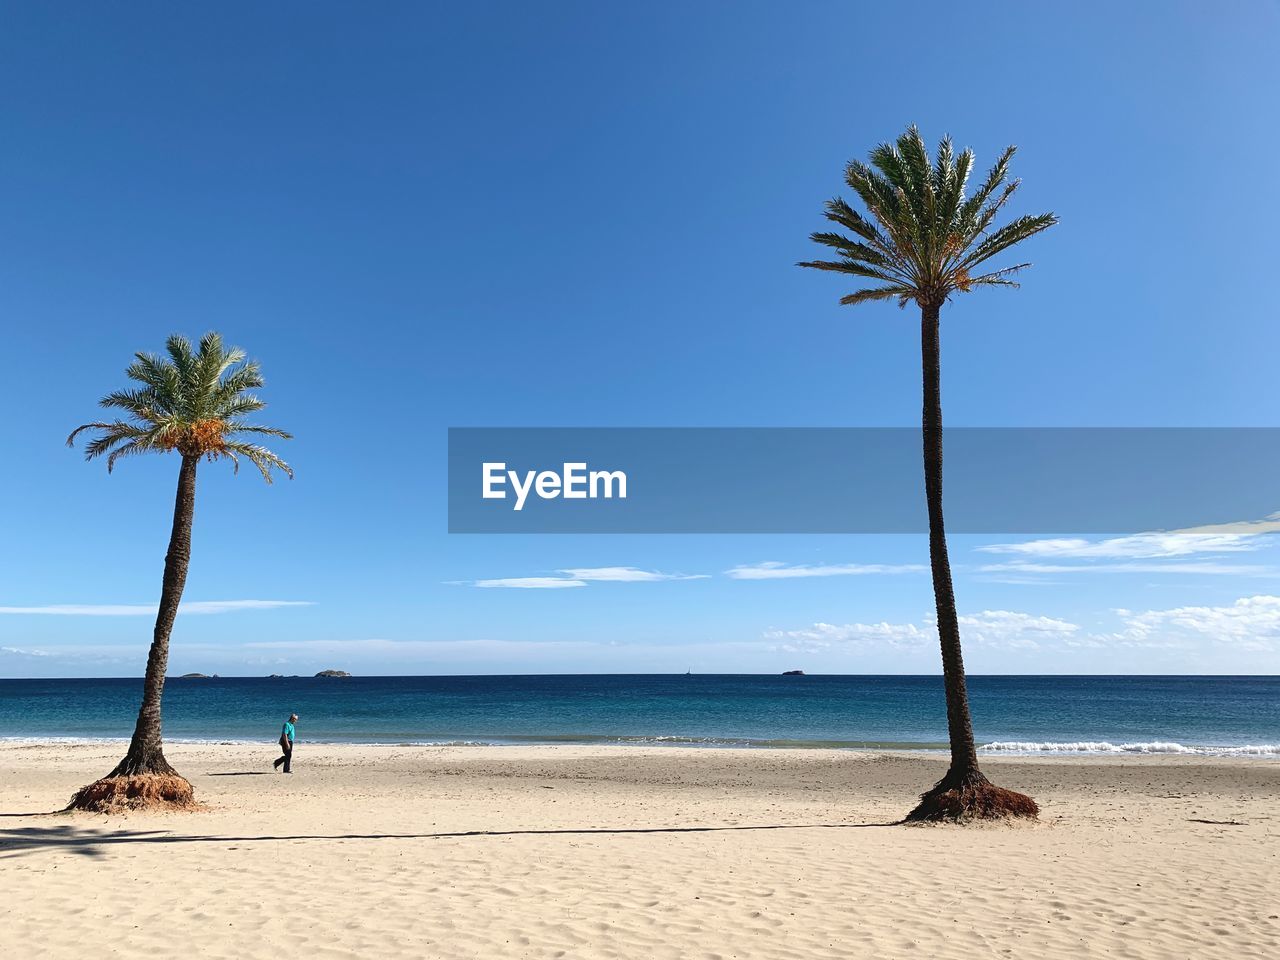 PALM TREES ON BEACH AGAINST BLUE SKY